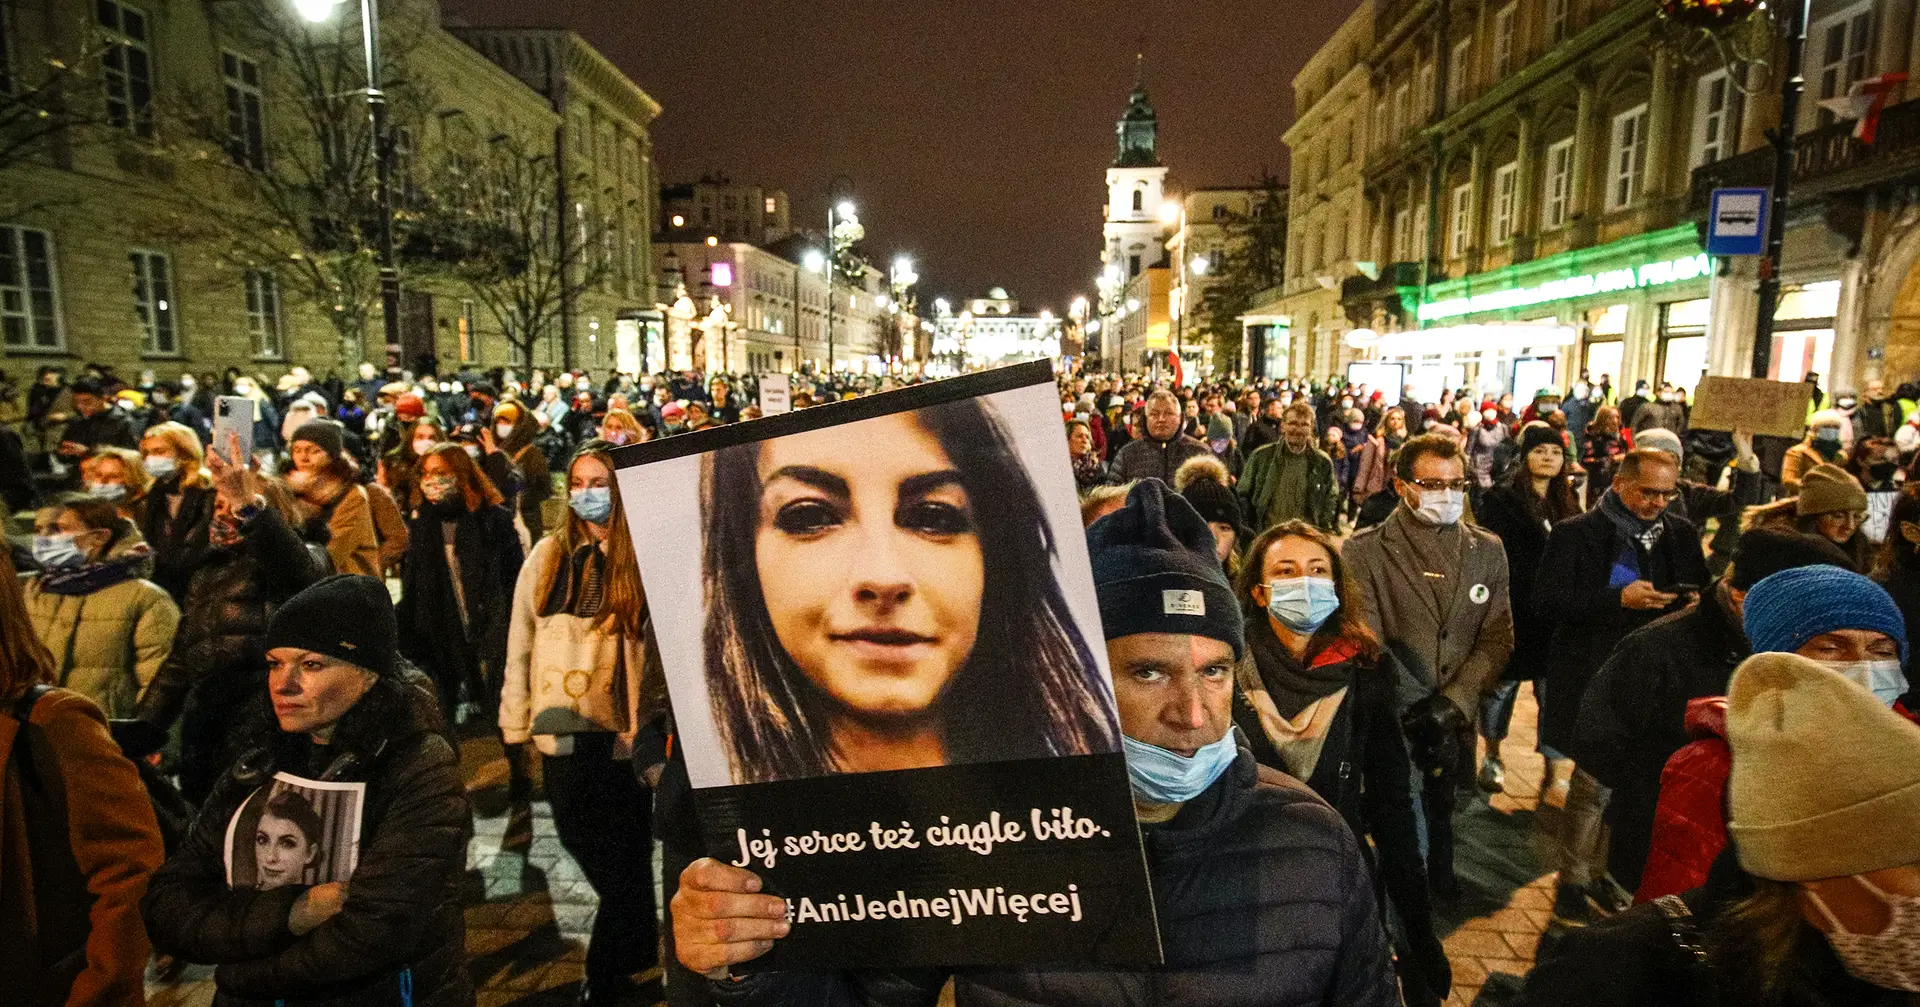 Abtreibung in Europa.  Rechtsverlust „nach der Wahl“